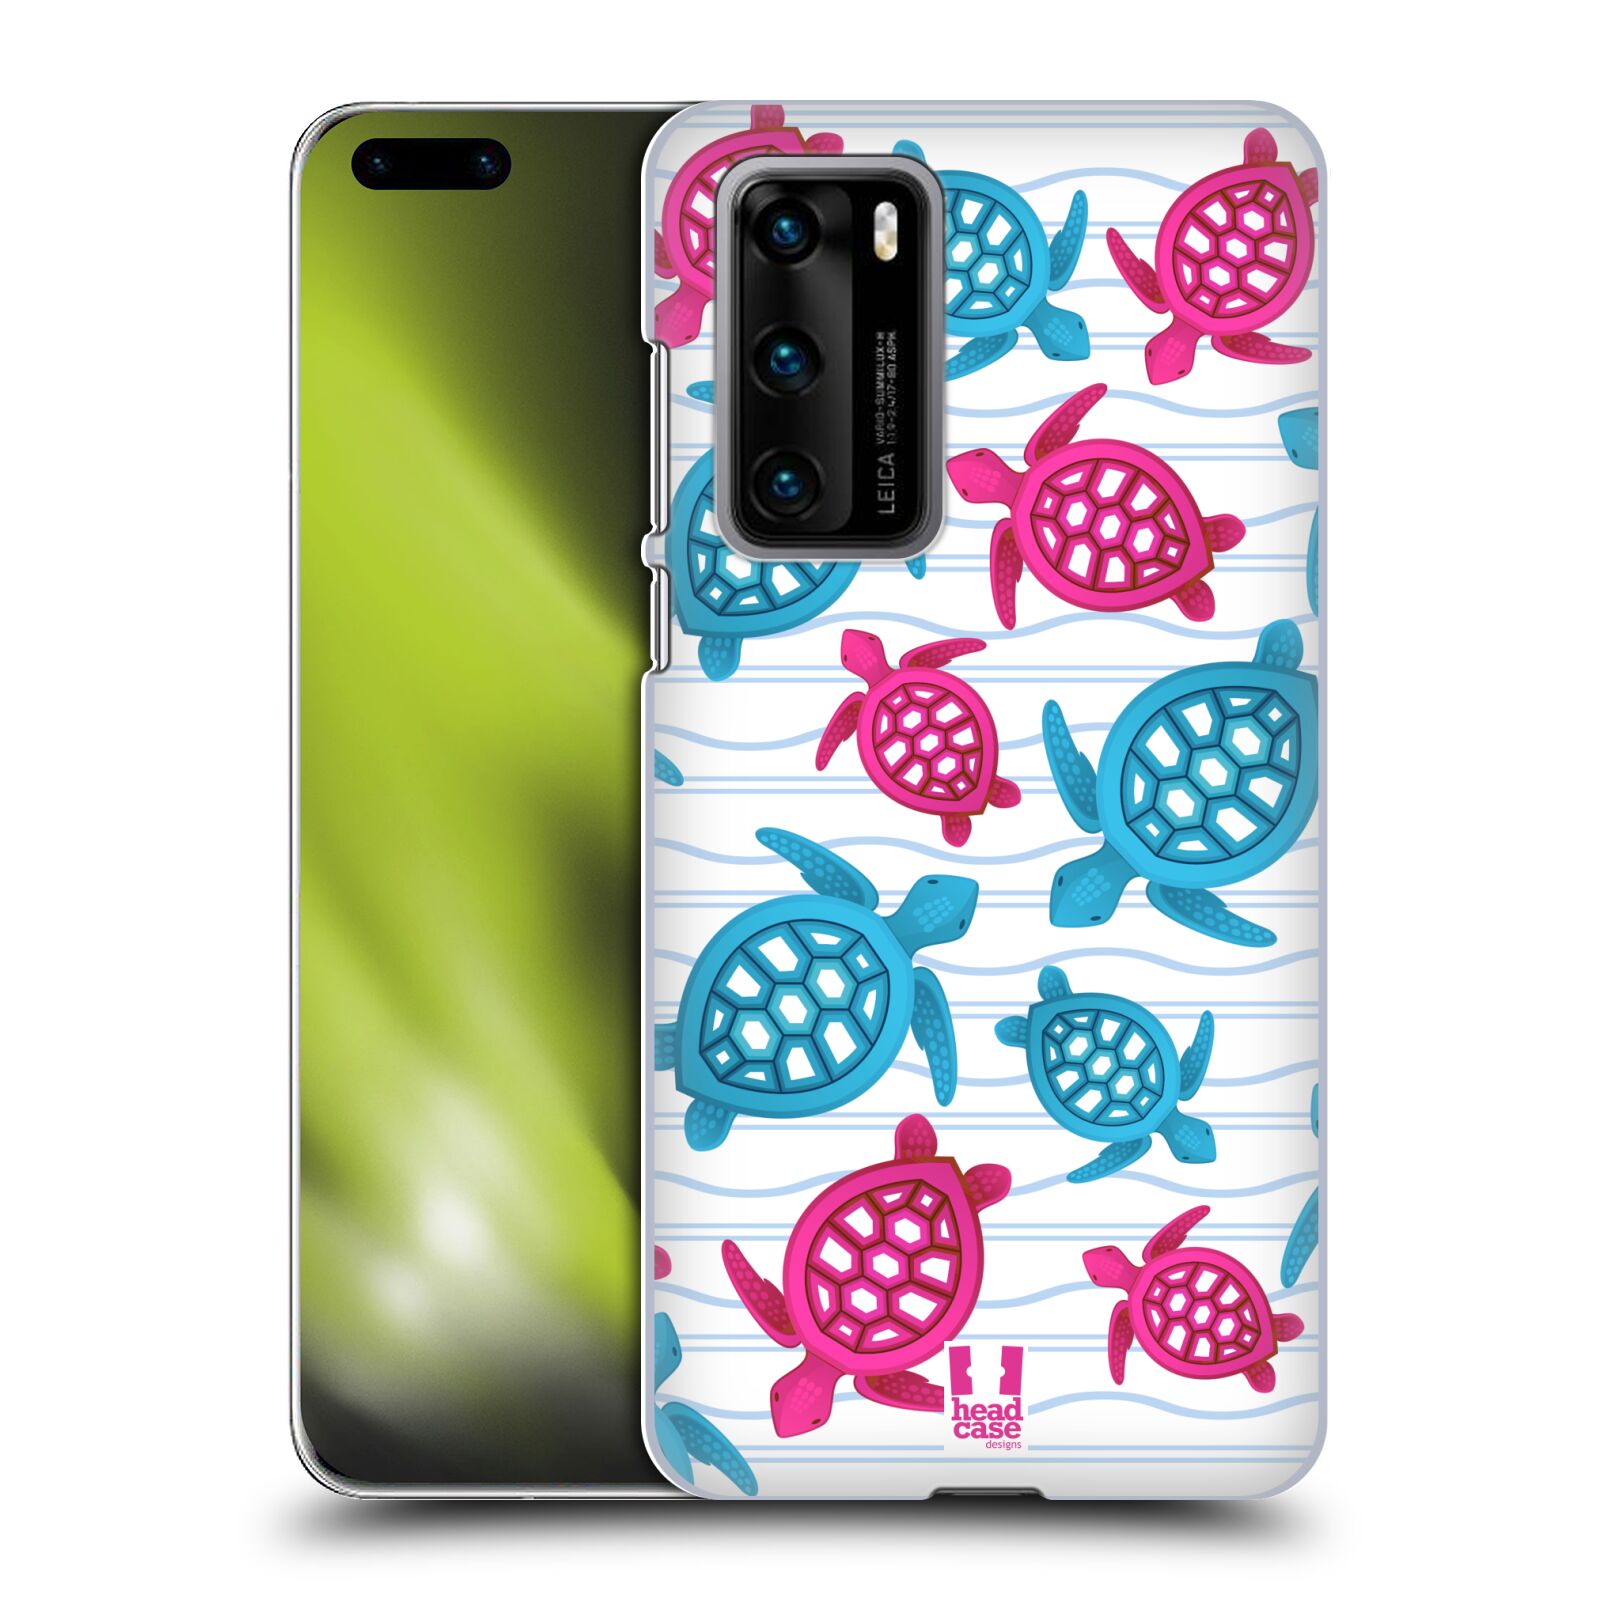 Zadní obal pro mobil Huawei P40 - HEAD CASE - kreslený mořský vzor želvičky